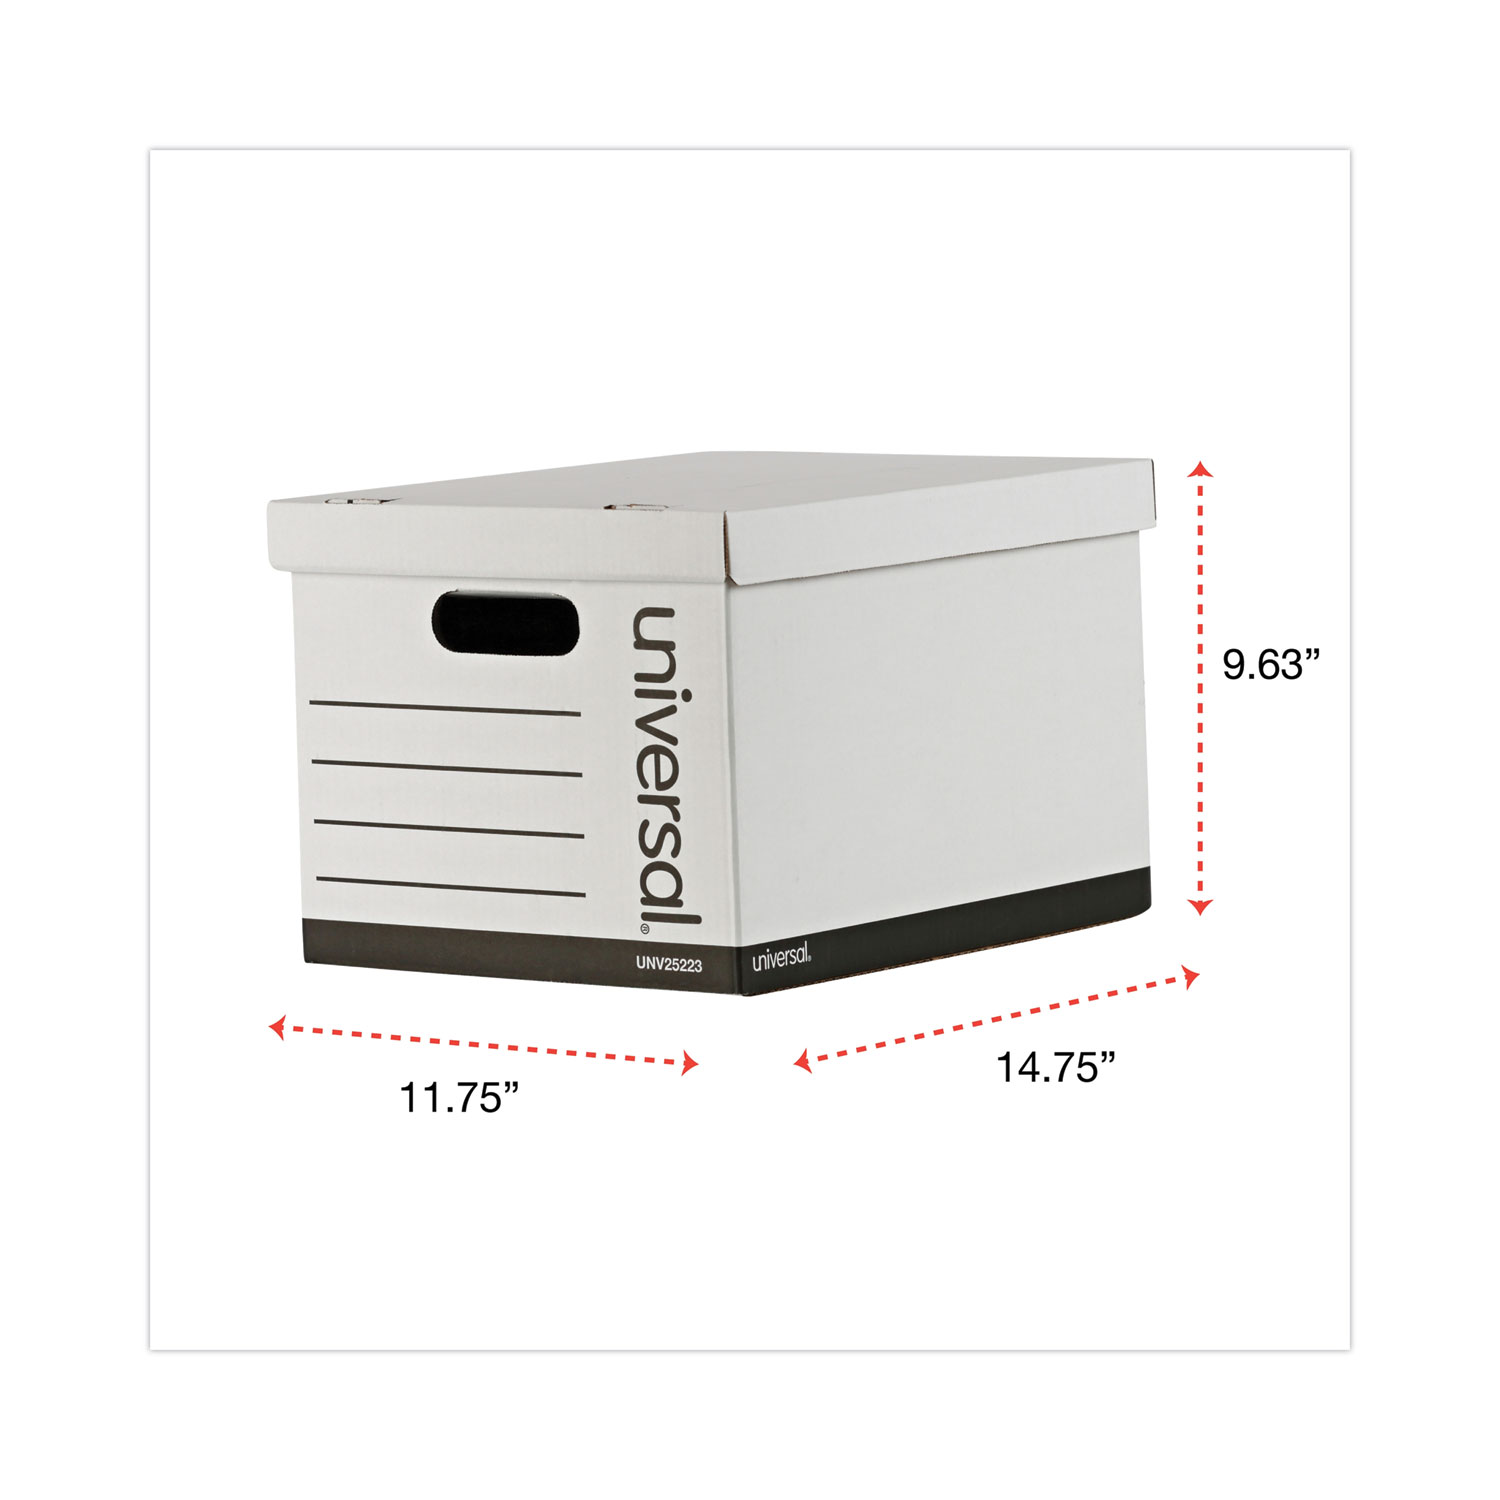 IDR SOLD jt. Pre💓LV VVGC strap mono panjang 105cm, box, DB, card and  receipt 2020